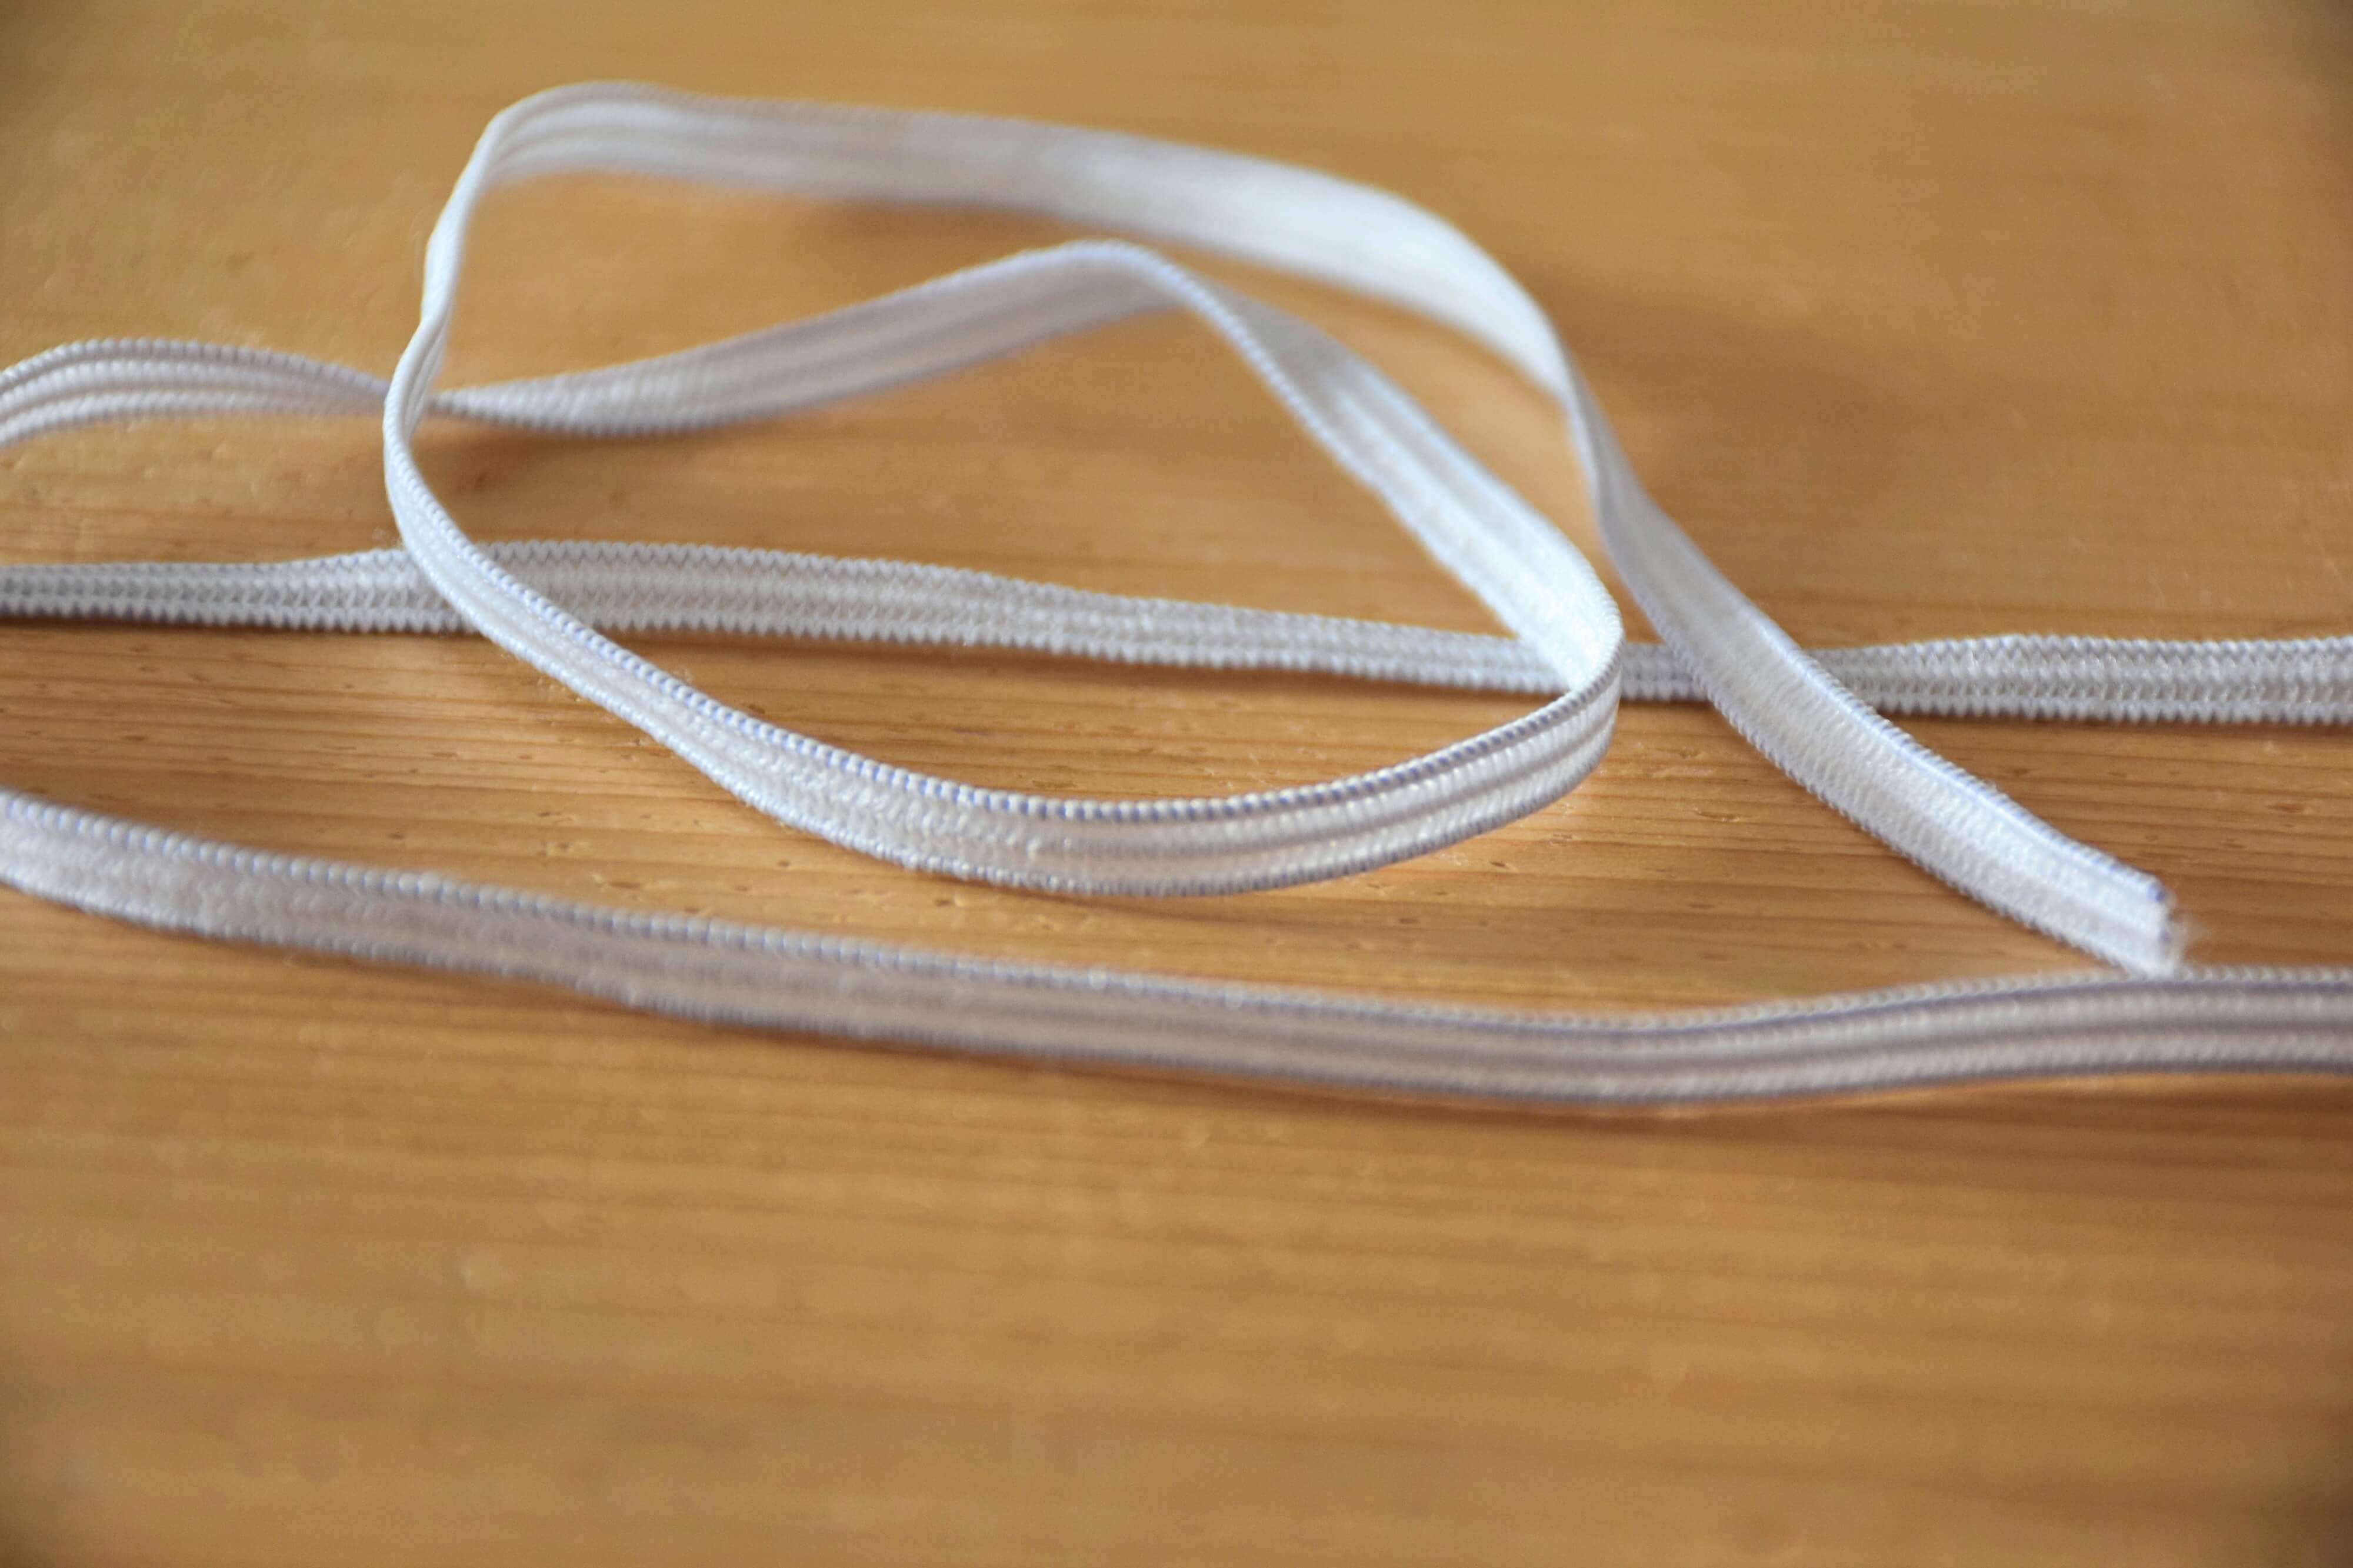 Comment placer un fil élastique sur vos vêtements